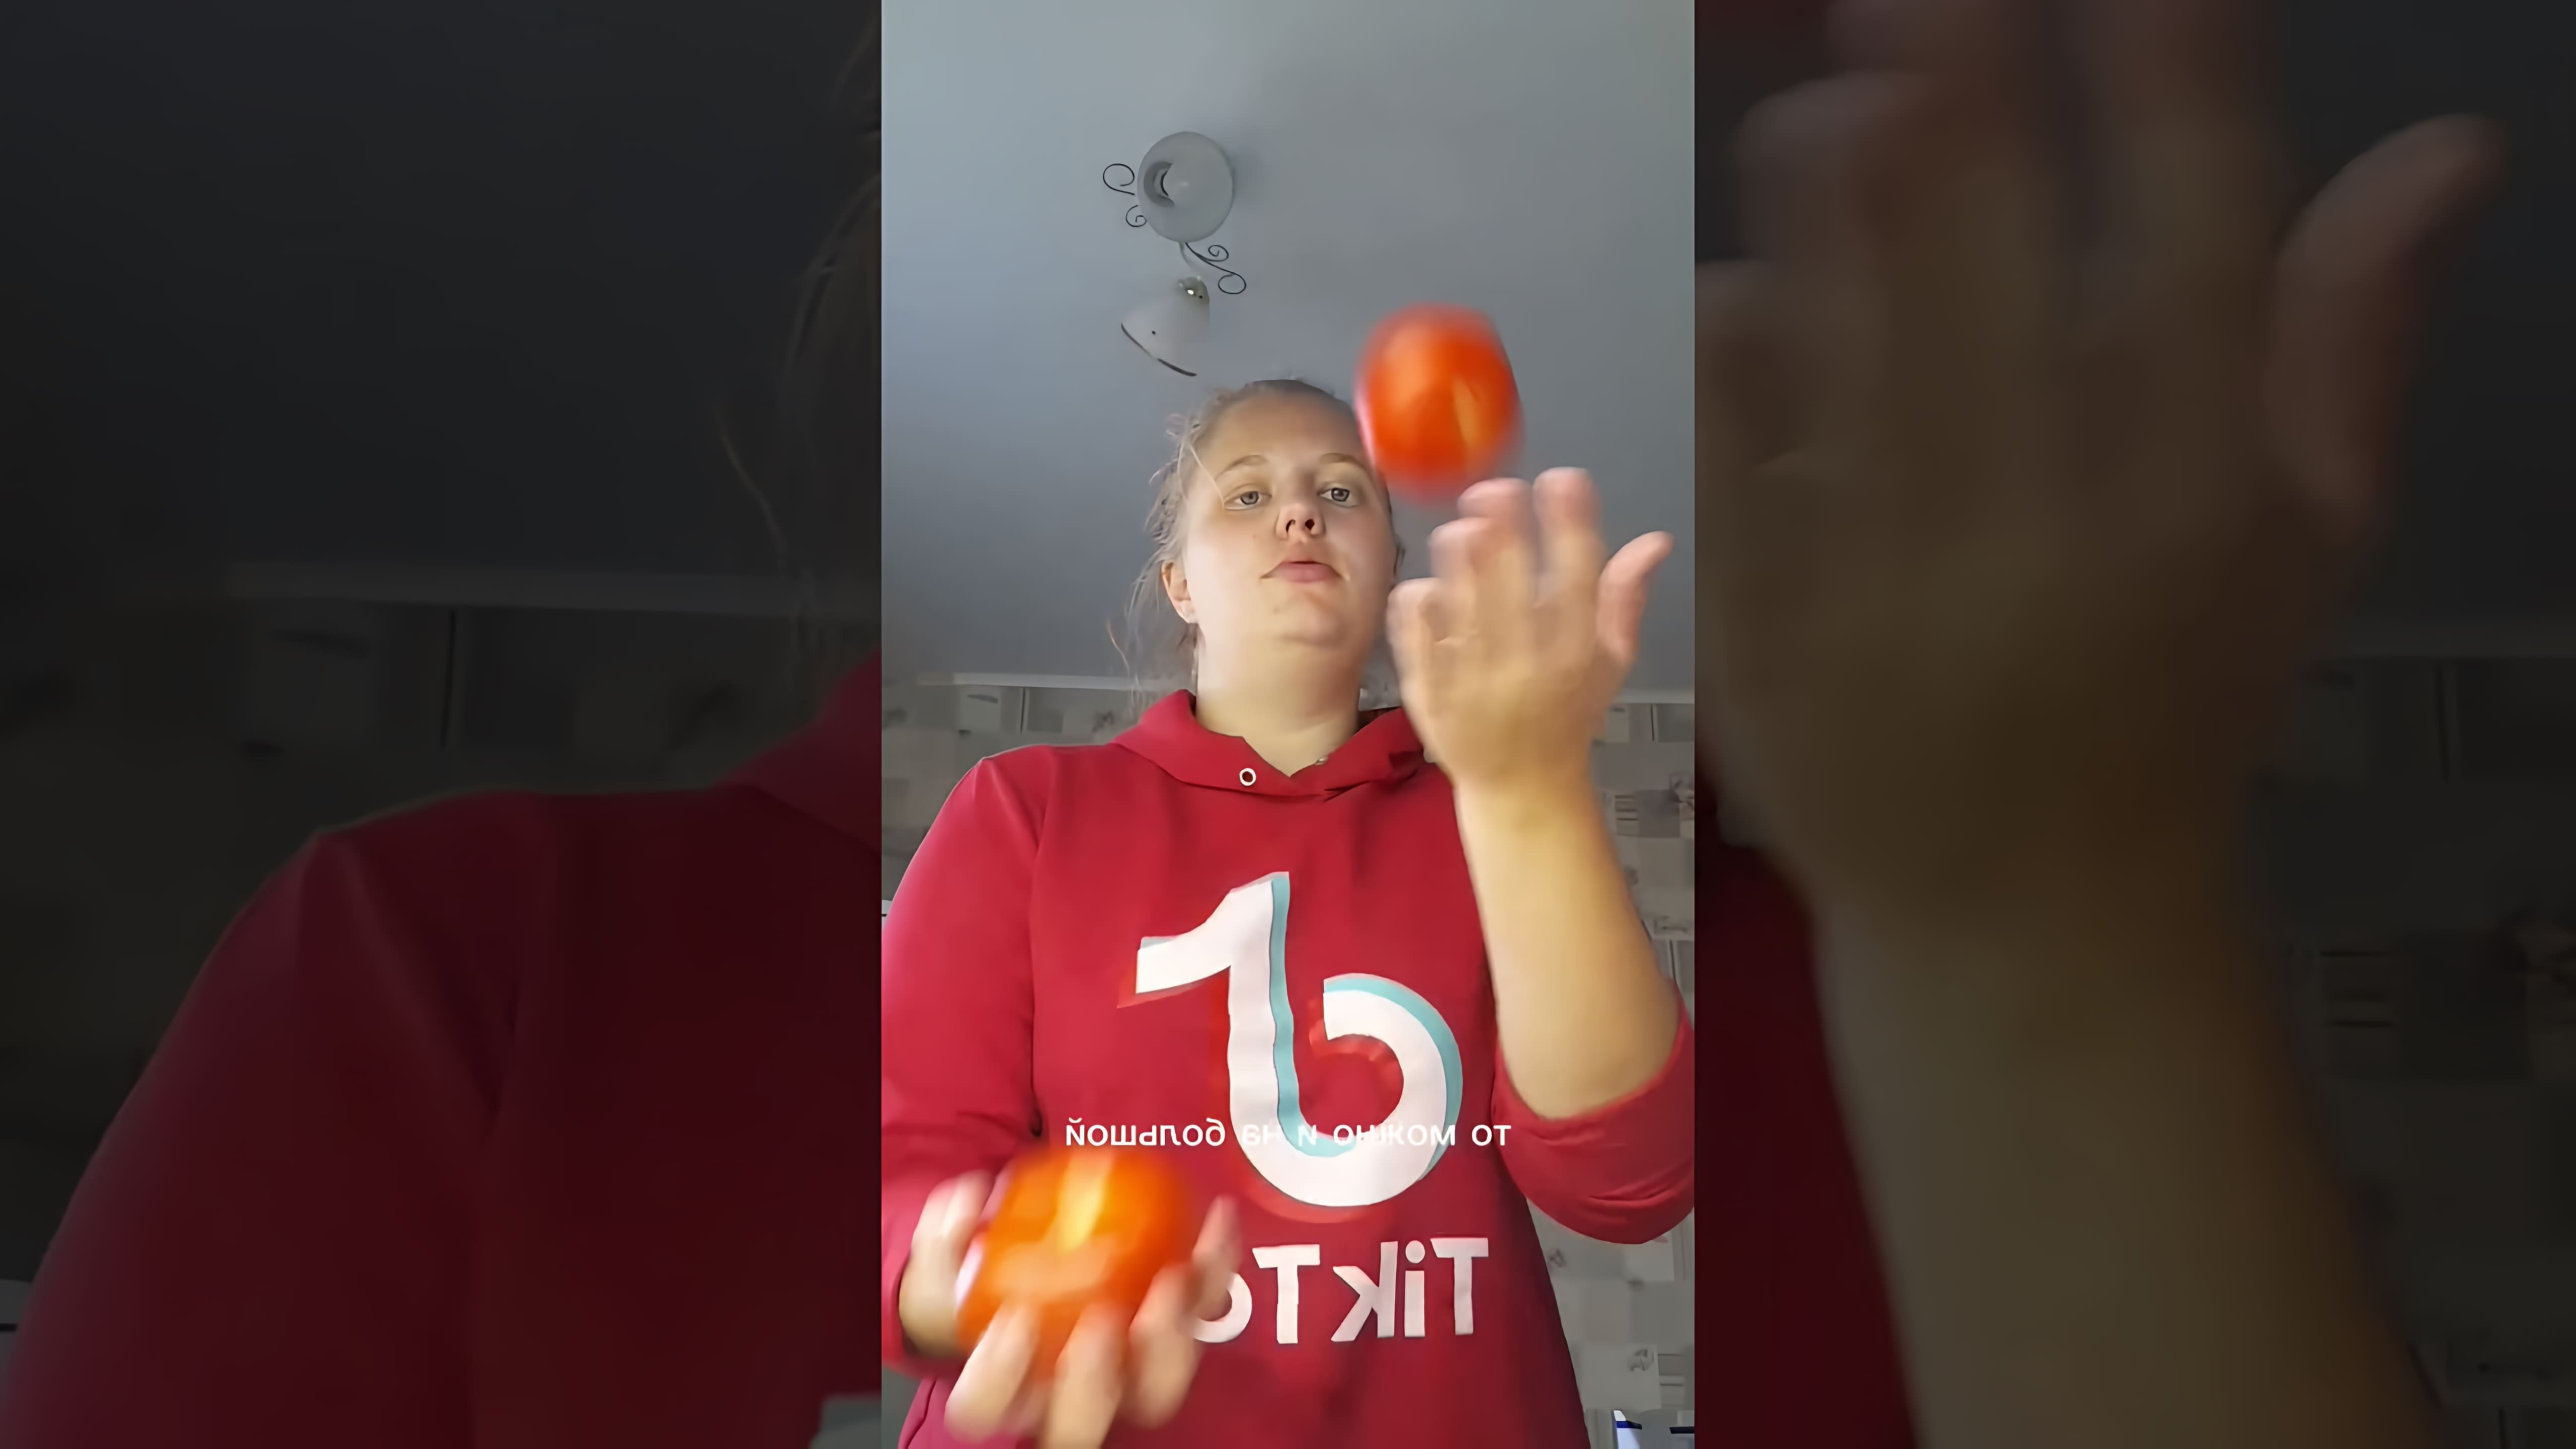 В этом видео девушка рассказывает о своем опыте питания по системе минус 60